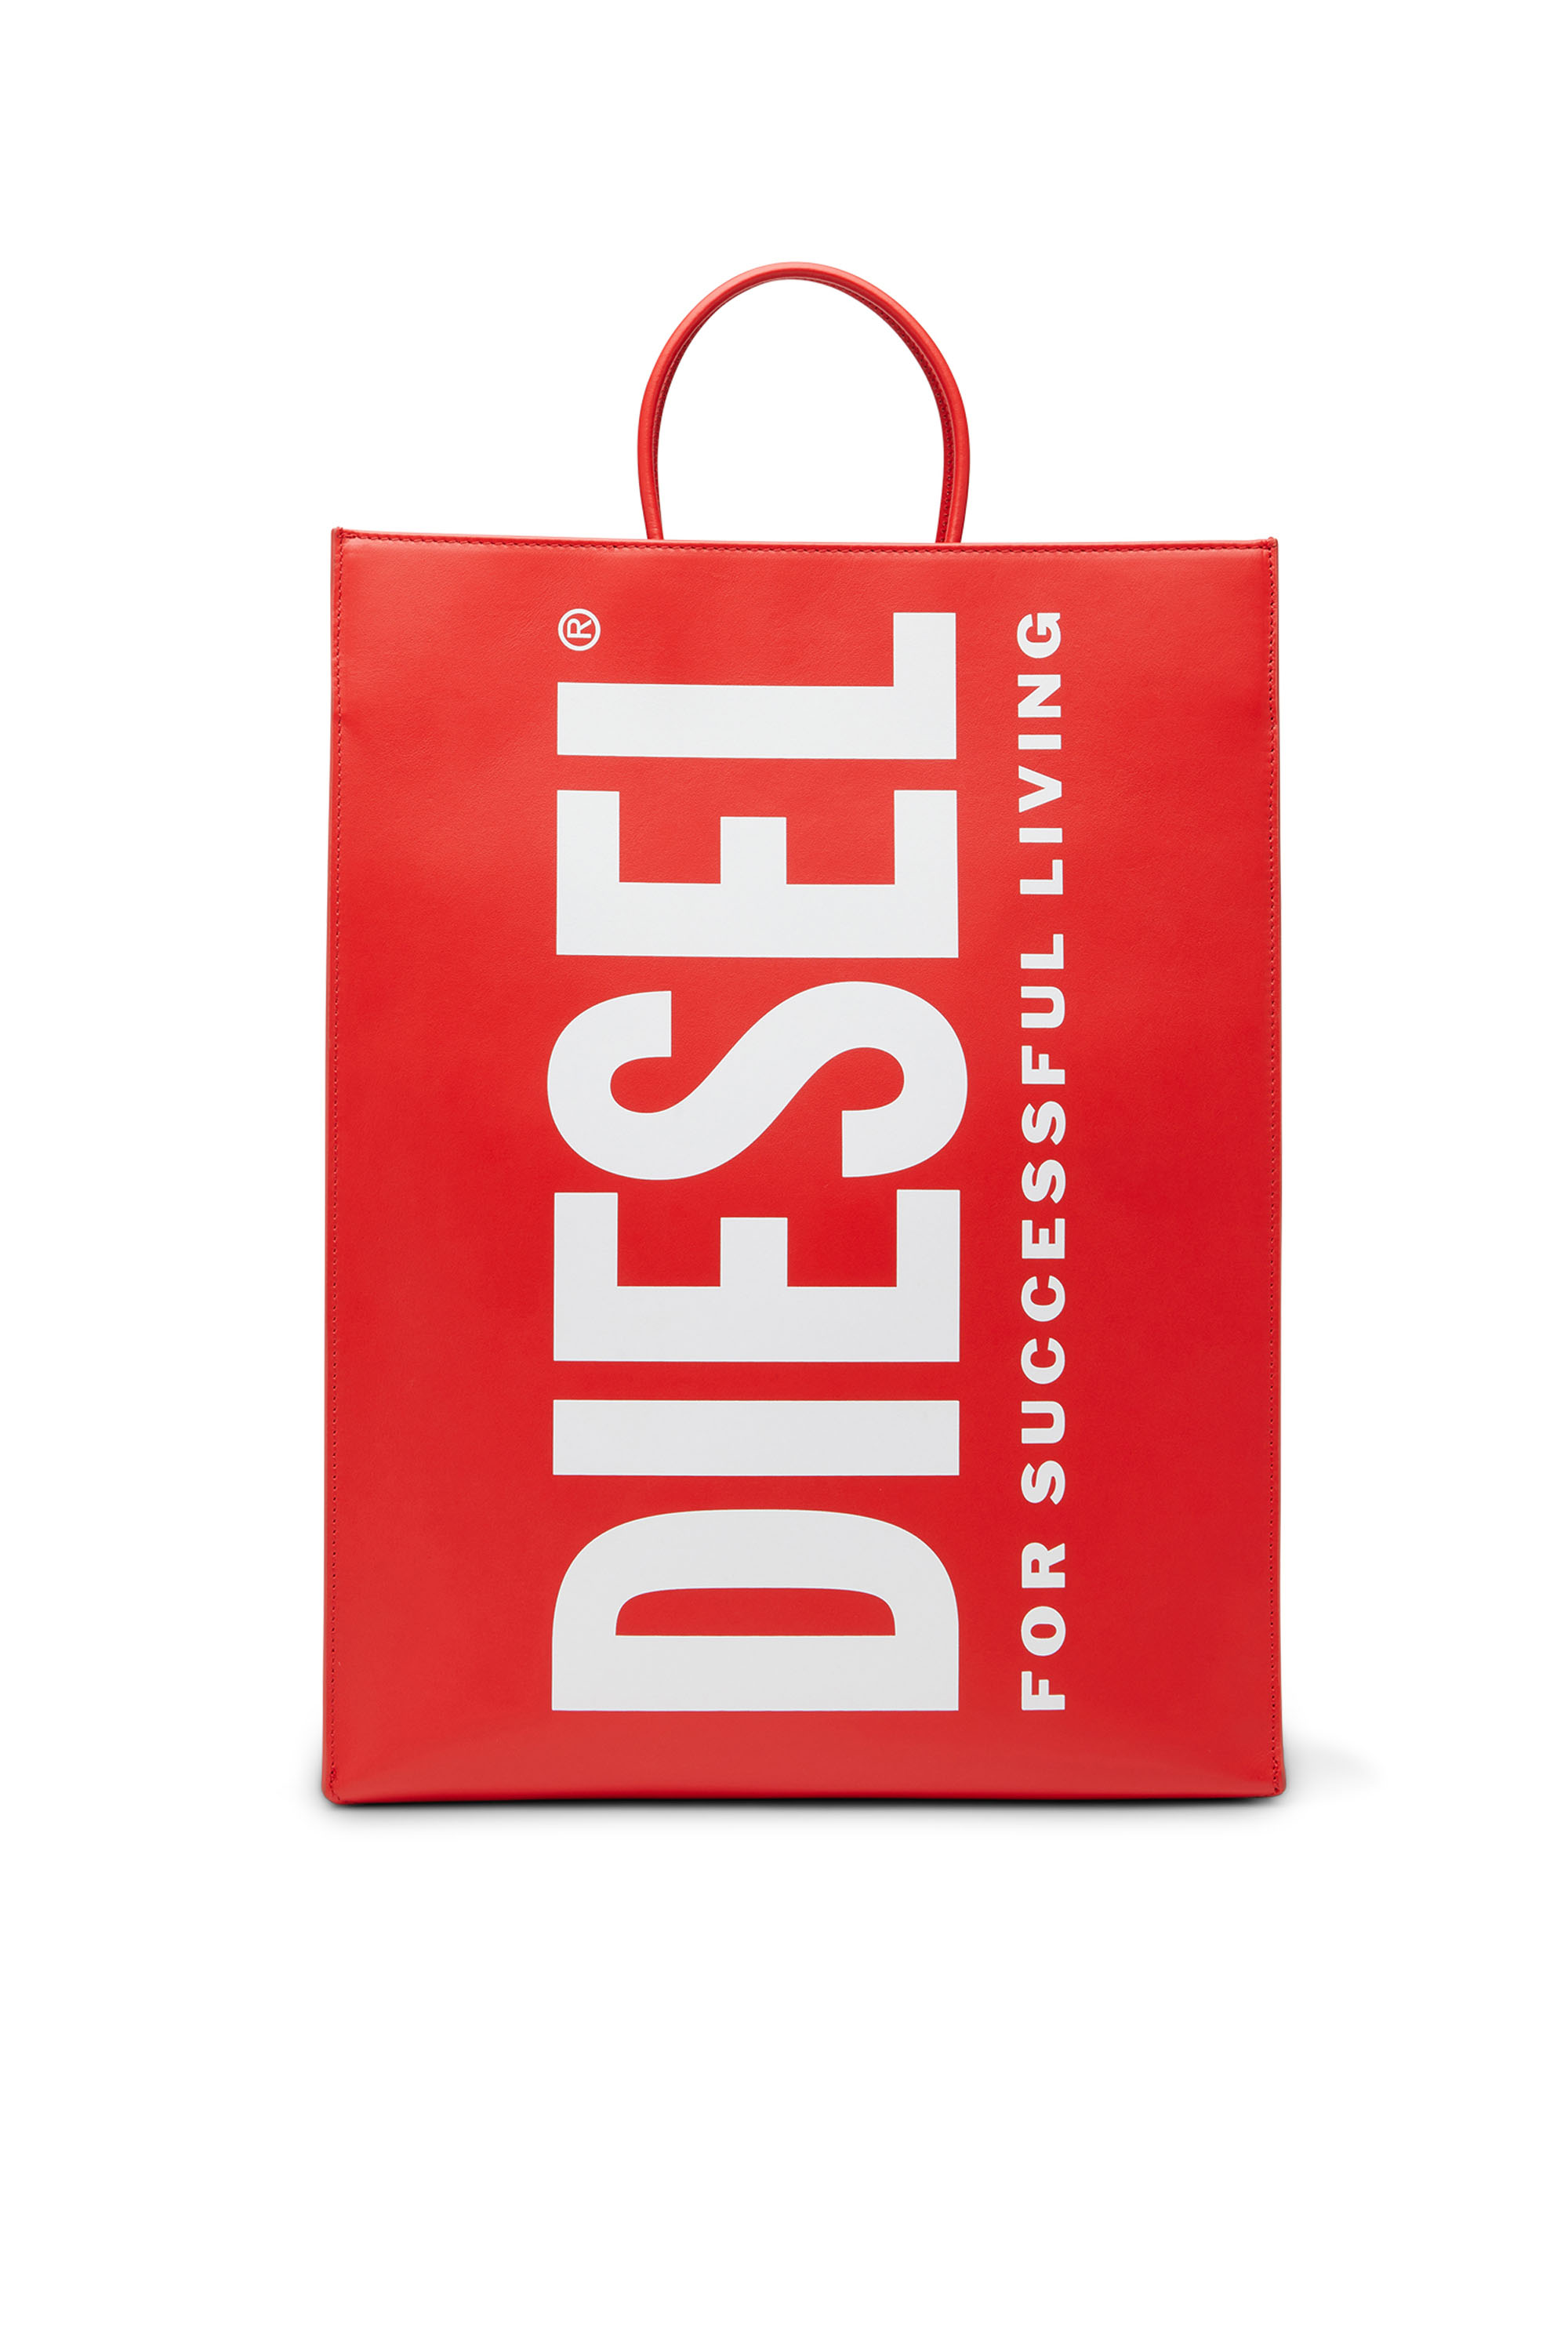 Diesel - DSL SHOPPER L X, Rosso - Image 1